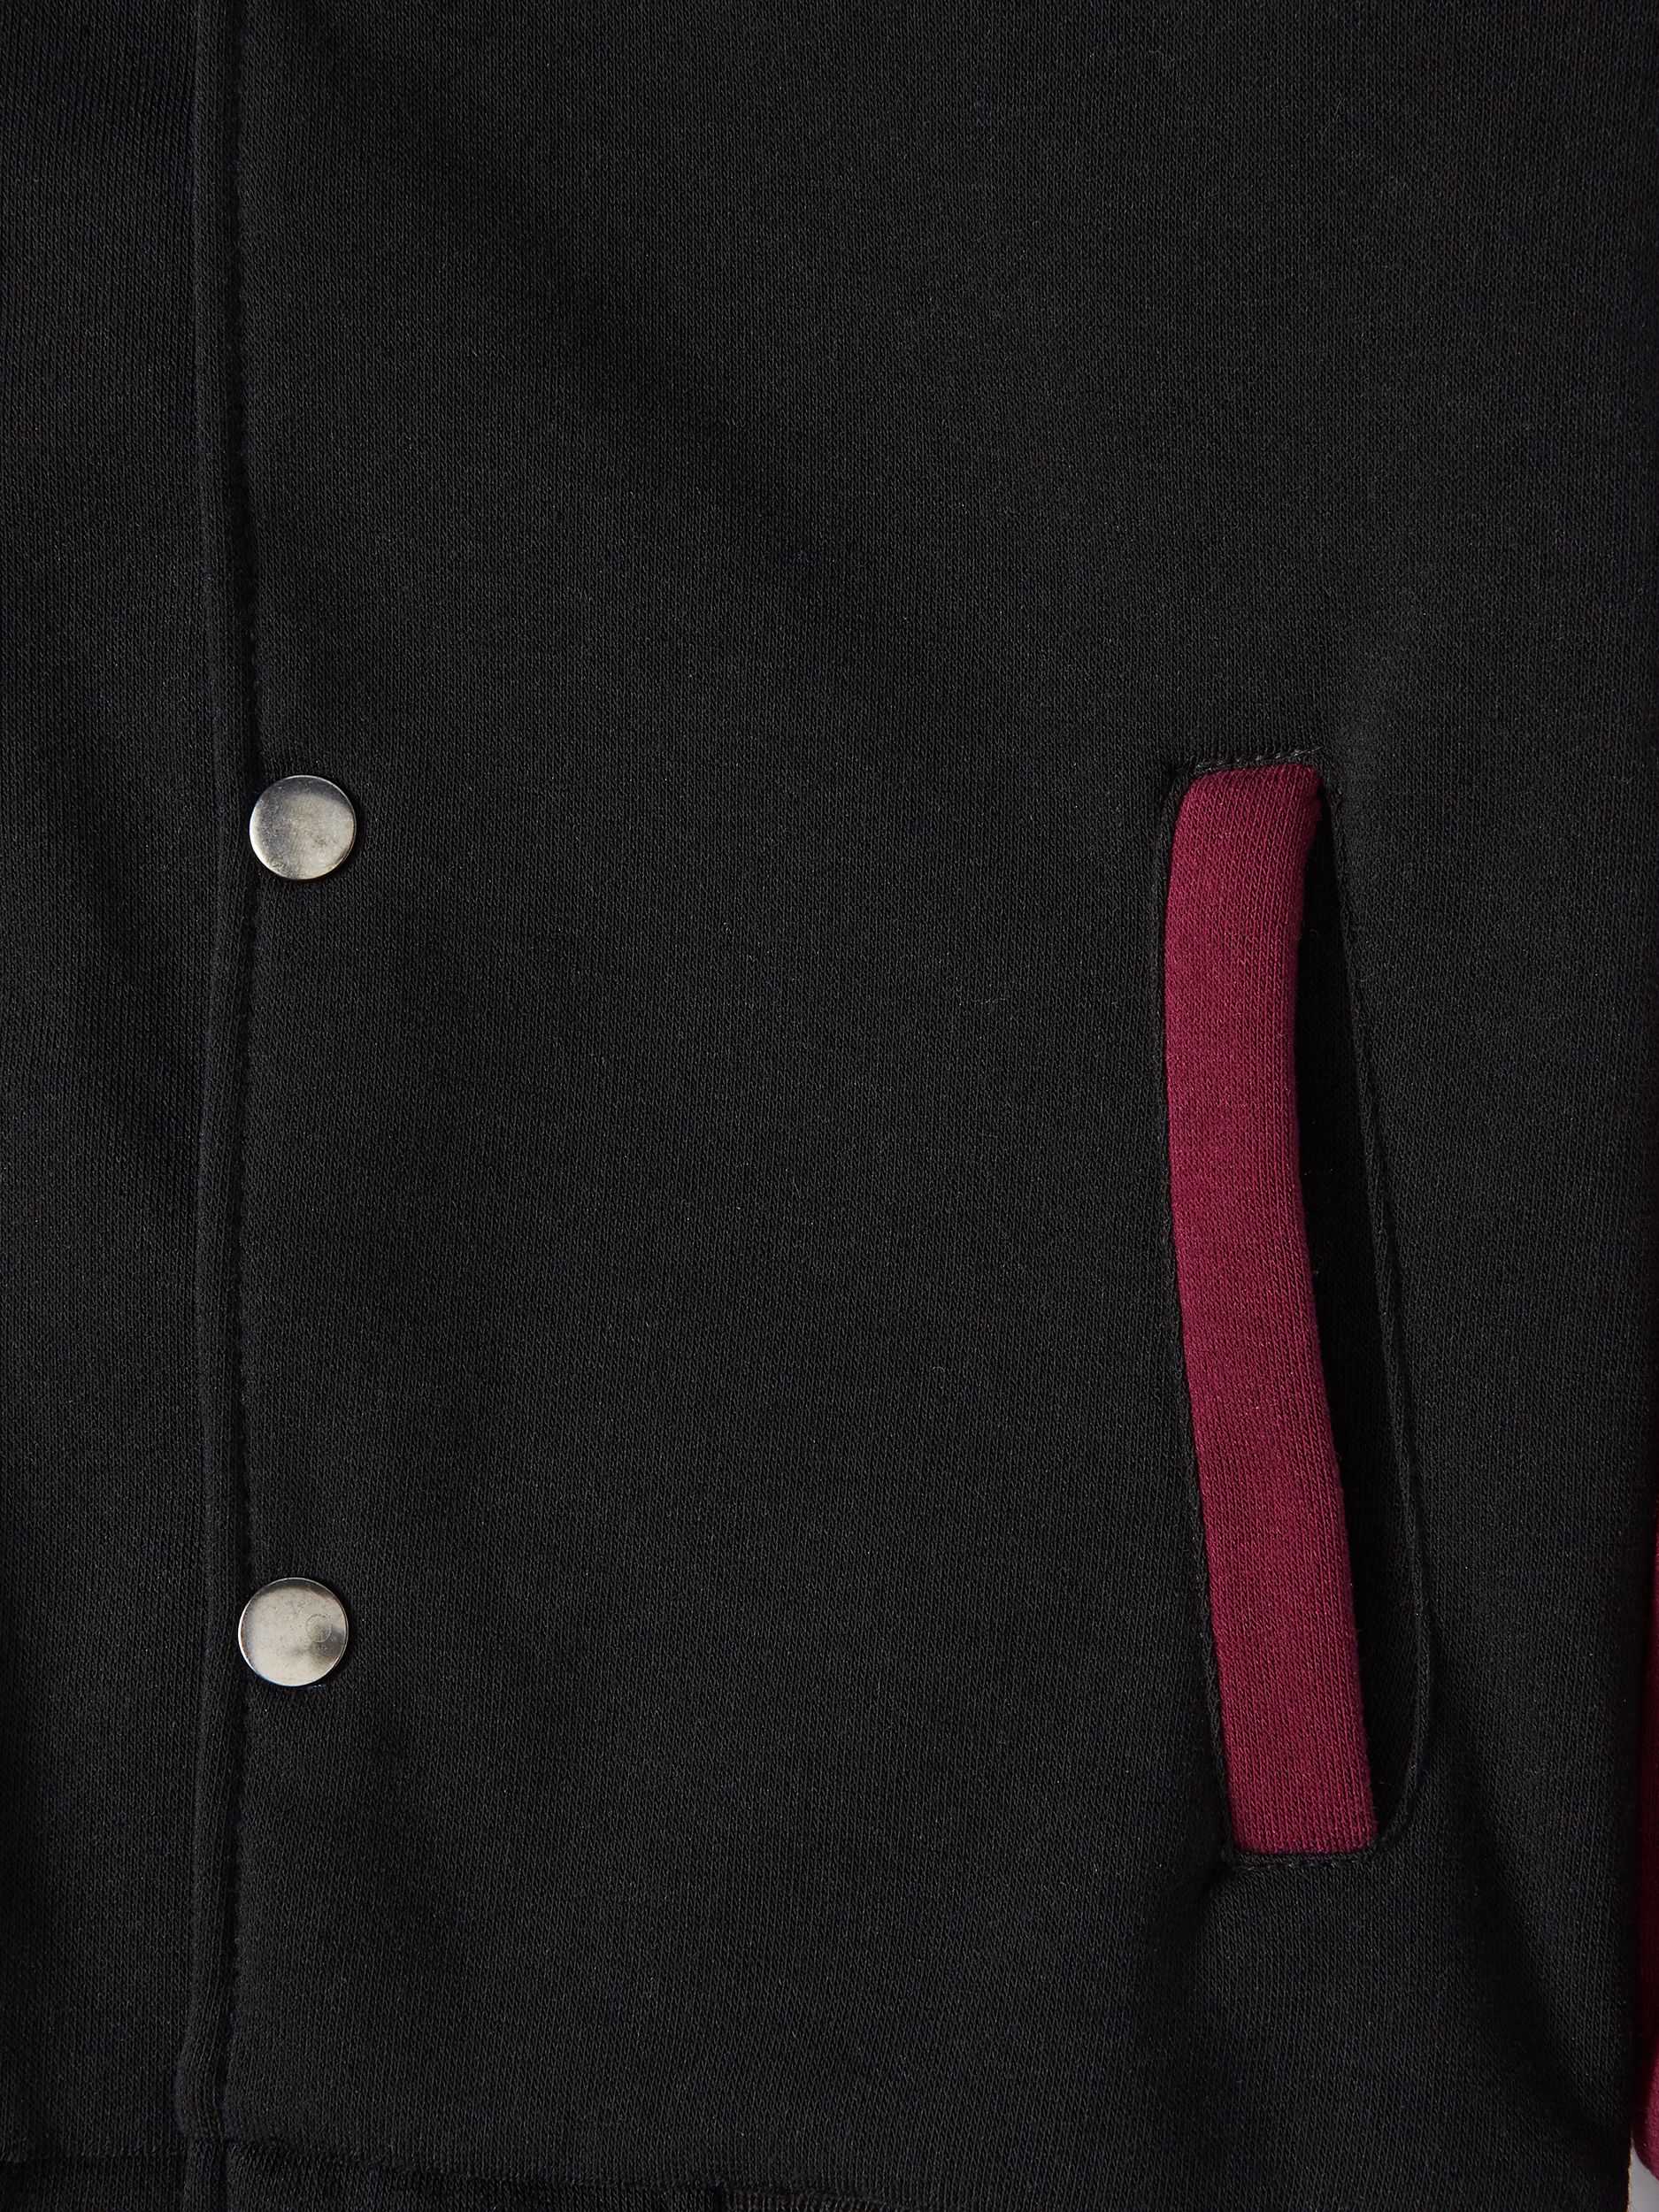 Bocini Boys Unlined Fleece Varsity Jackets, Sizes 6-16 - image 2 of 3